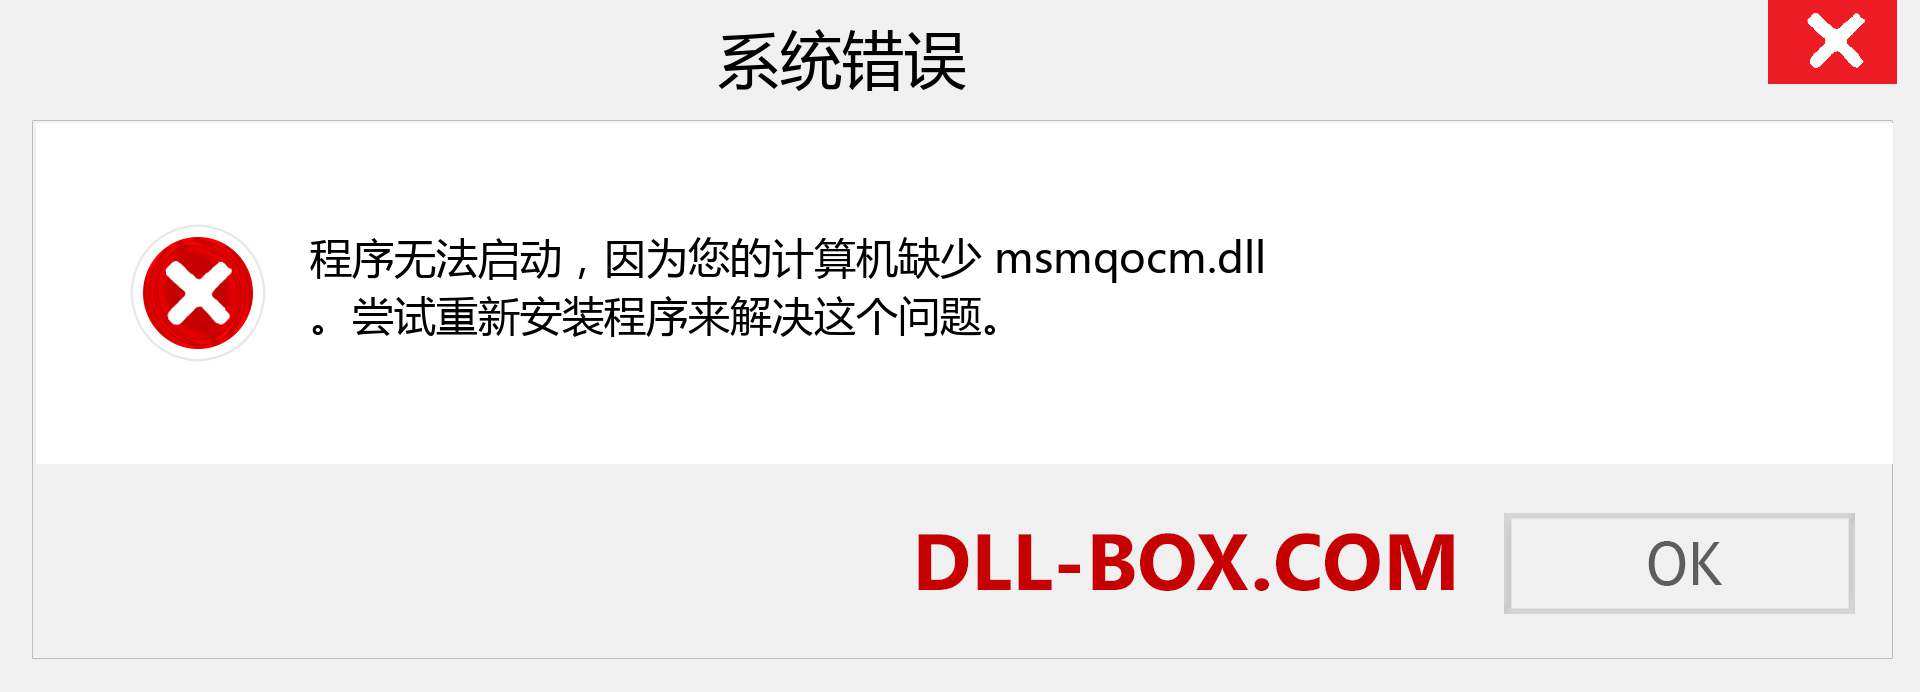 msmqocm.dll 文件丢失？。 适用于 Windows 7、8、10 的下载 - 修复 Windows、照片、图像上的 msmqocm dll 丢失错误